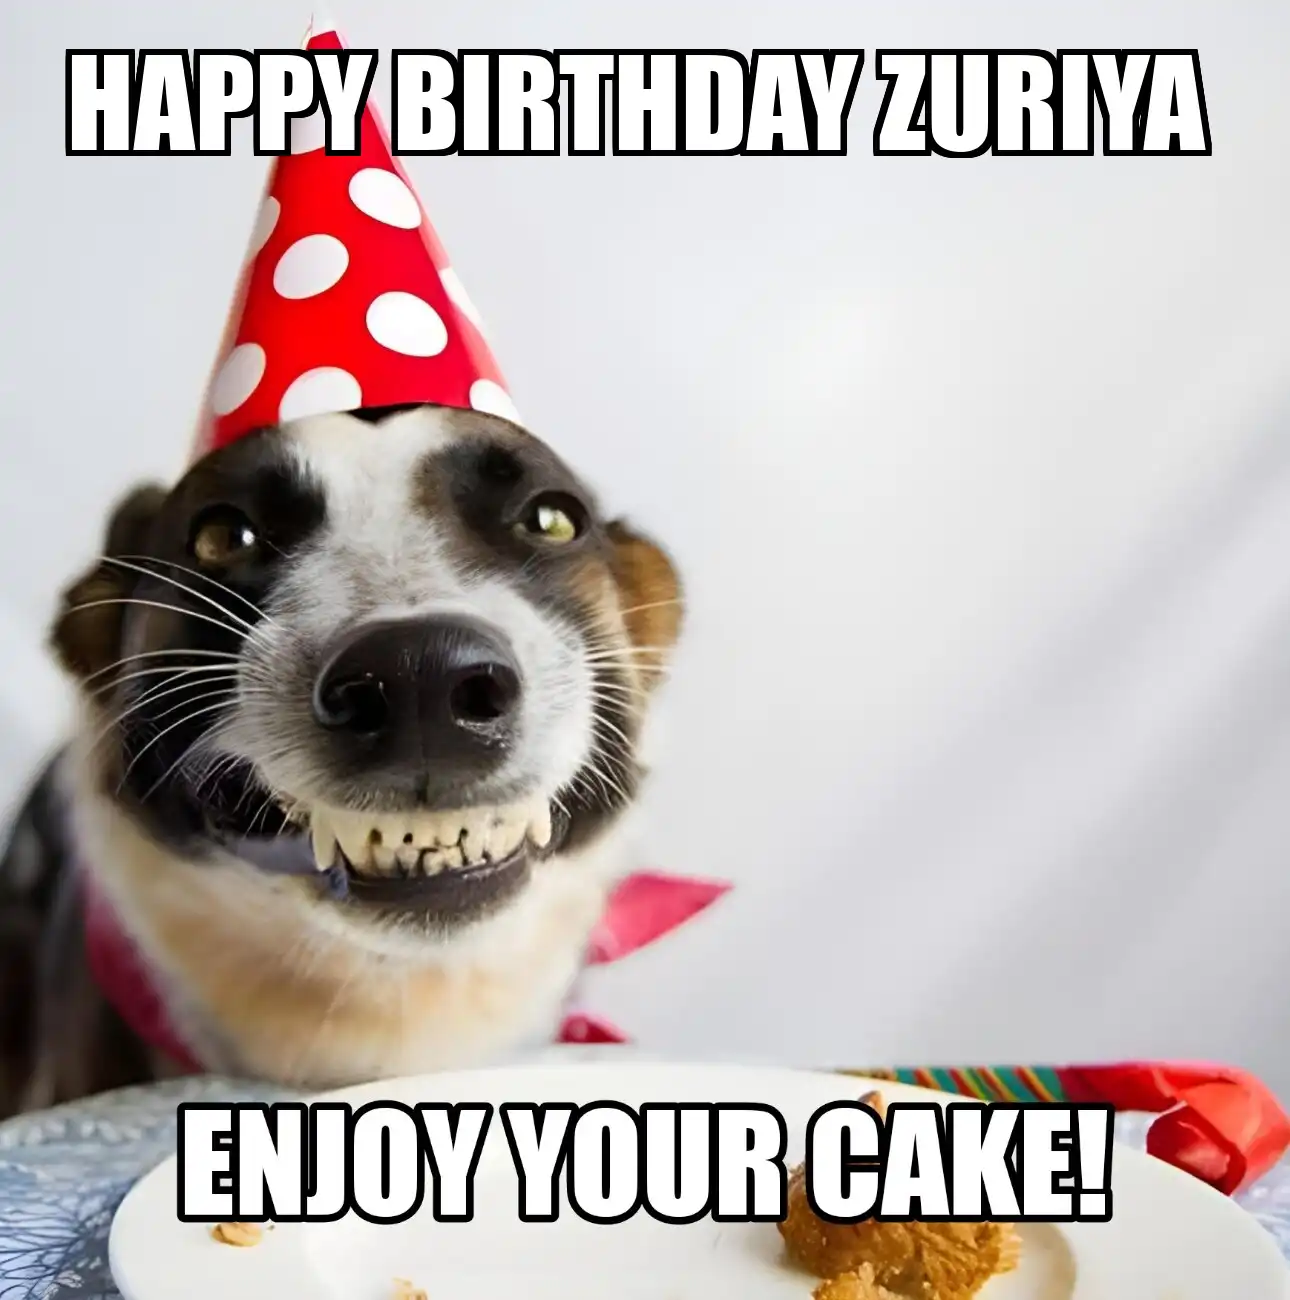 Happy Birthday Zuriya Enjoy Your Cake Dog Meme